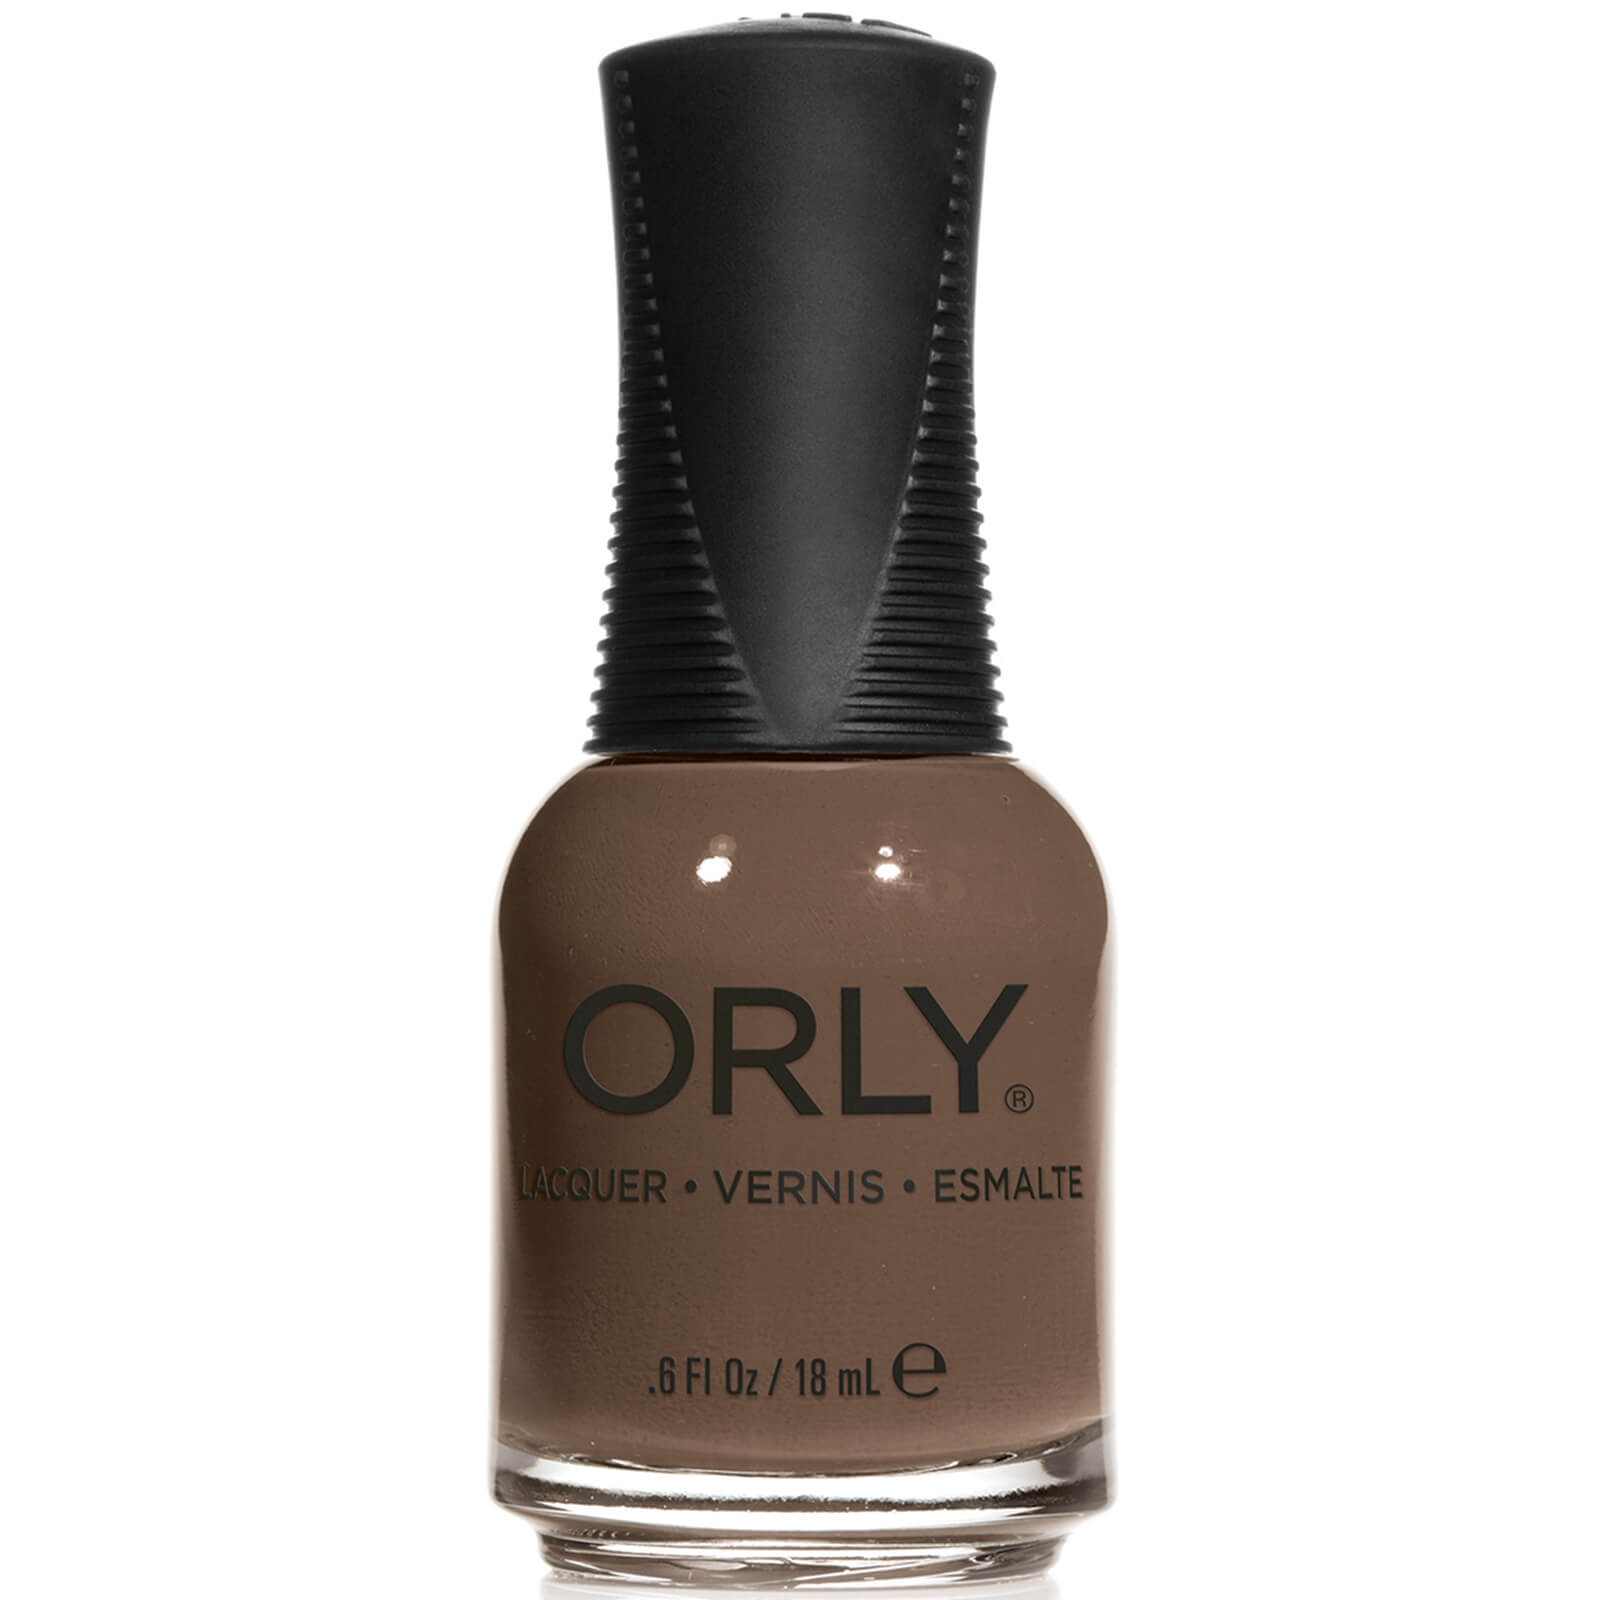 Orly Nail Lacquer 18ml (Various Shades) – Price Charming lookfantastic.com imagine